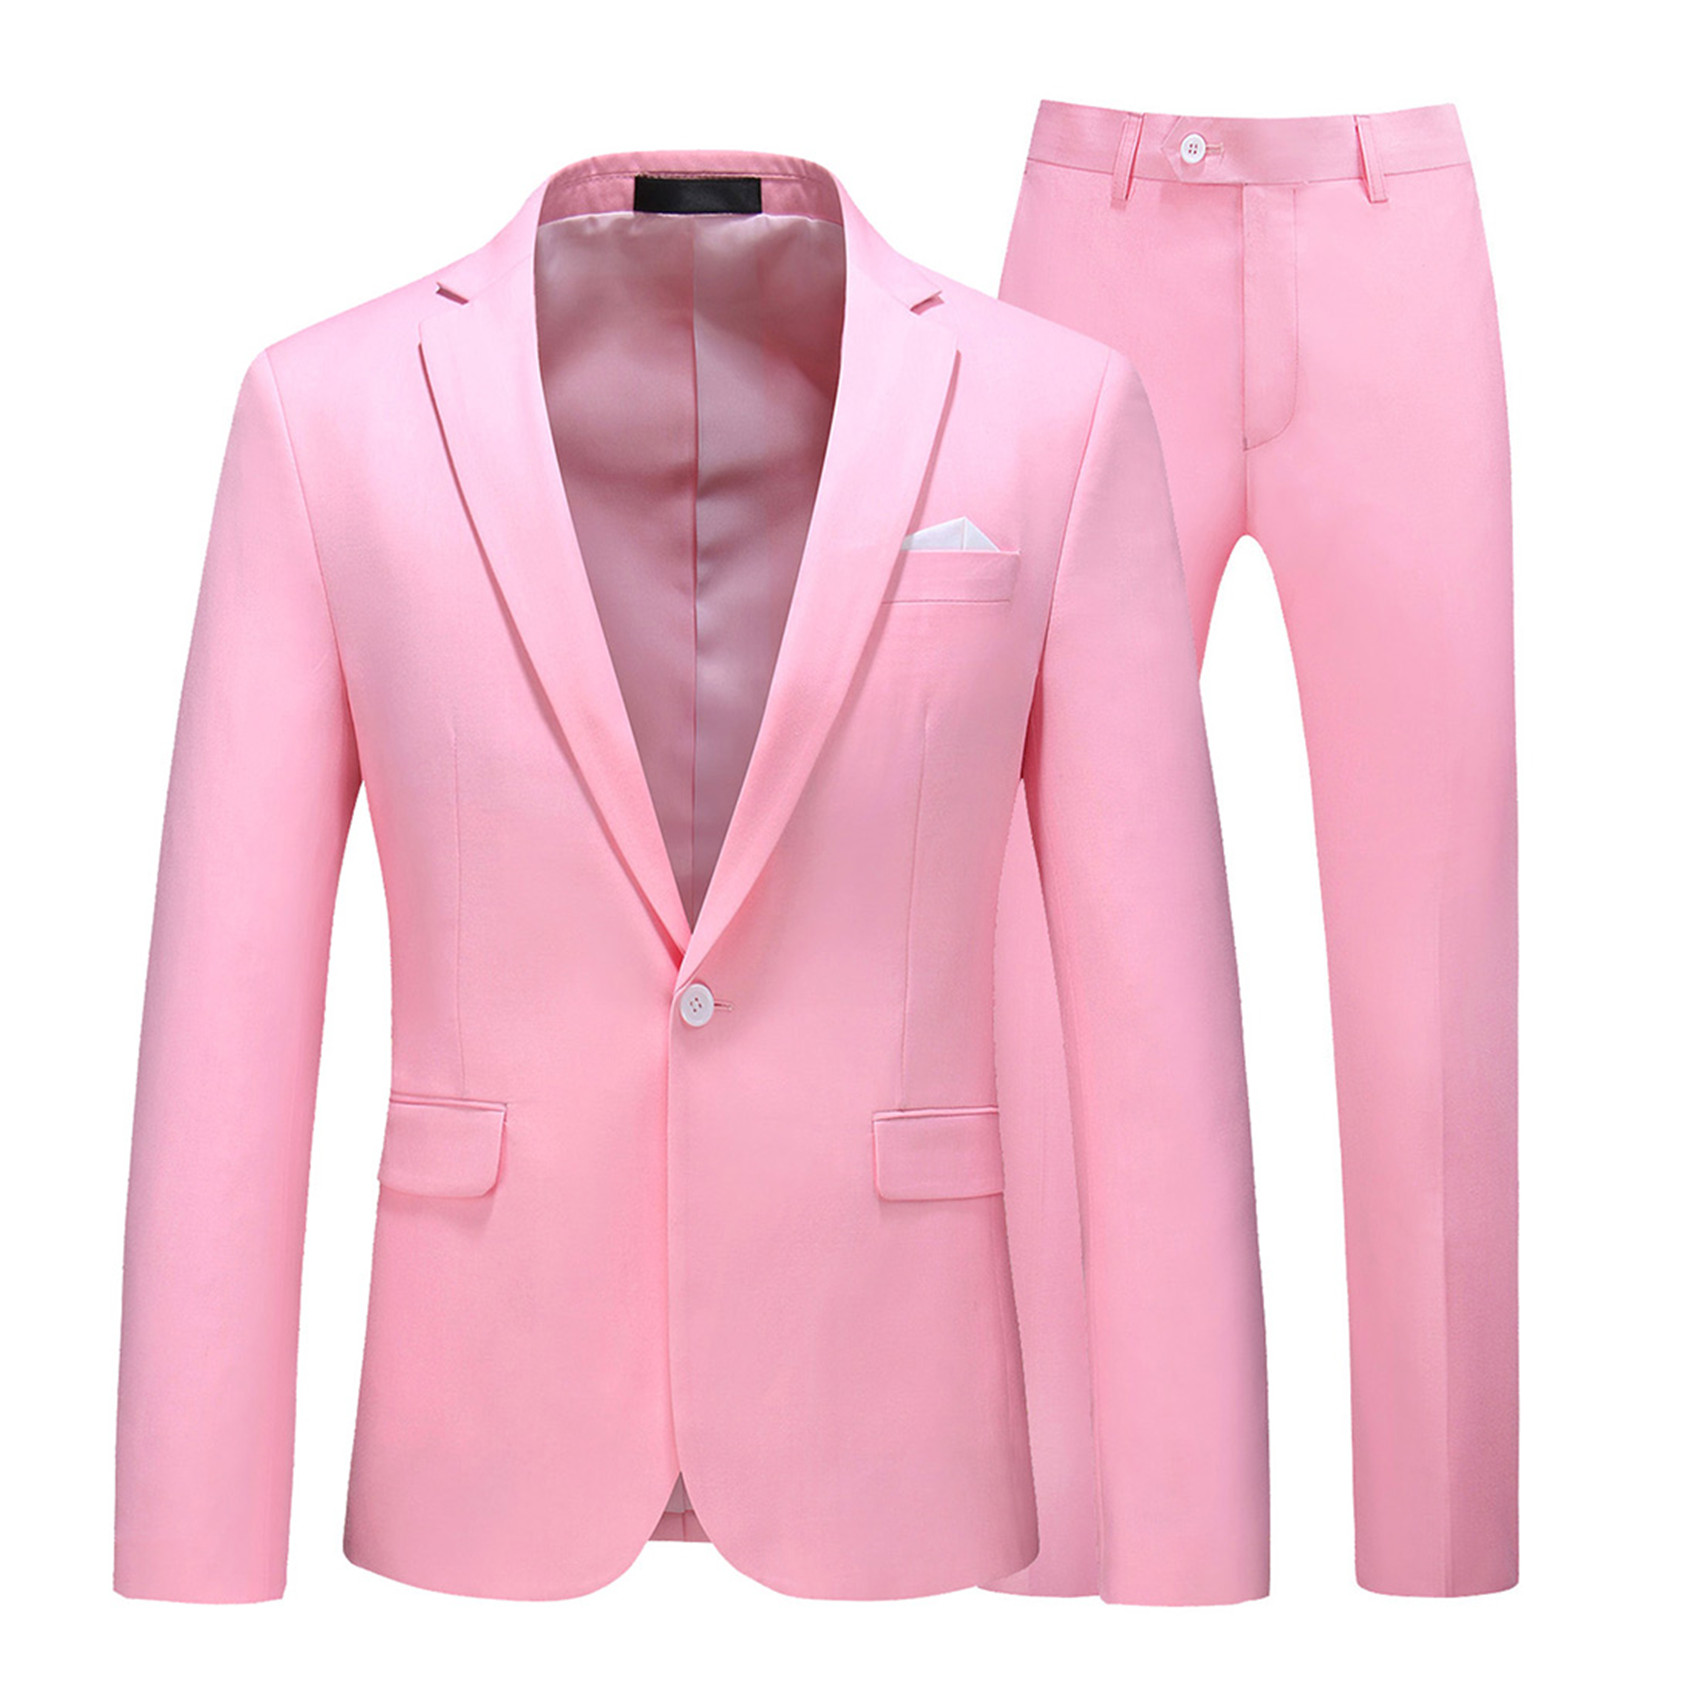 2 Piece Suit for Men, Slim Fit, Plain, Light Pink (1 Button)